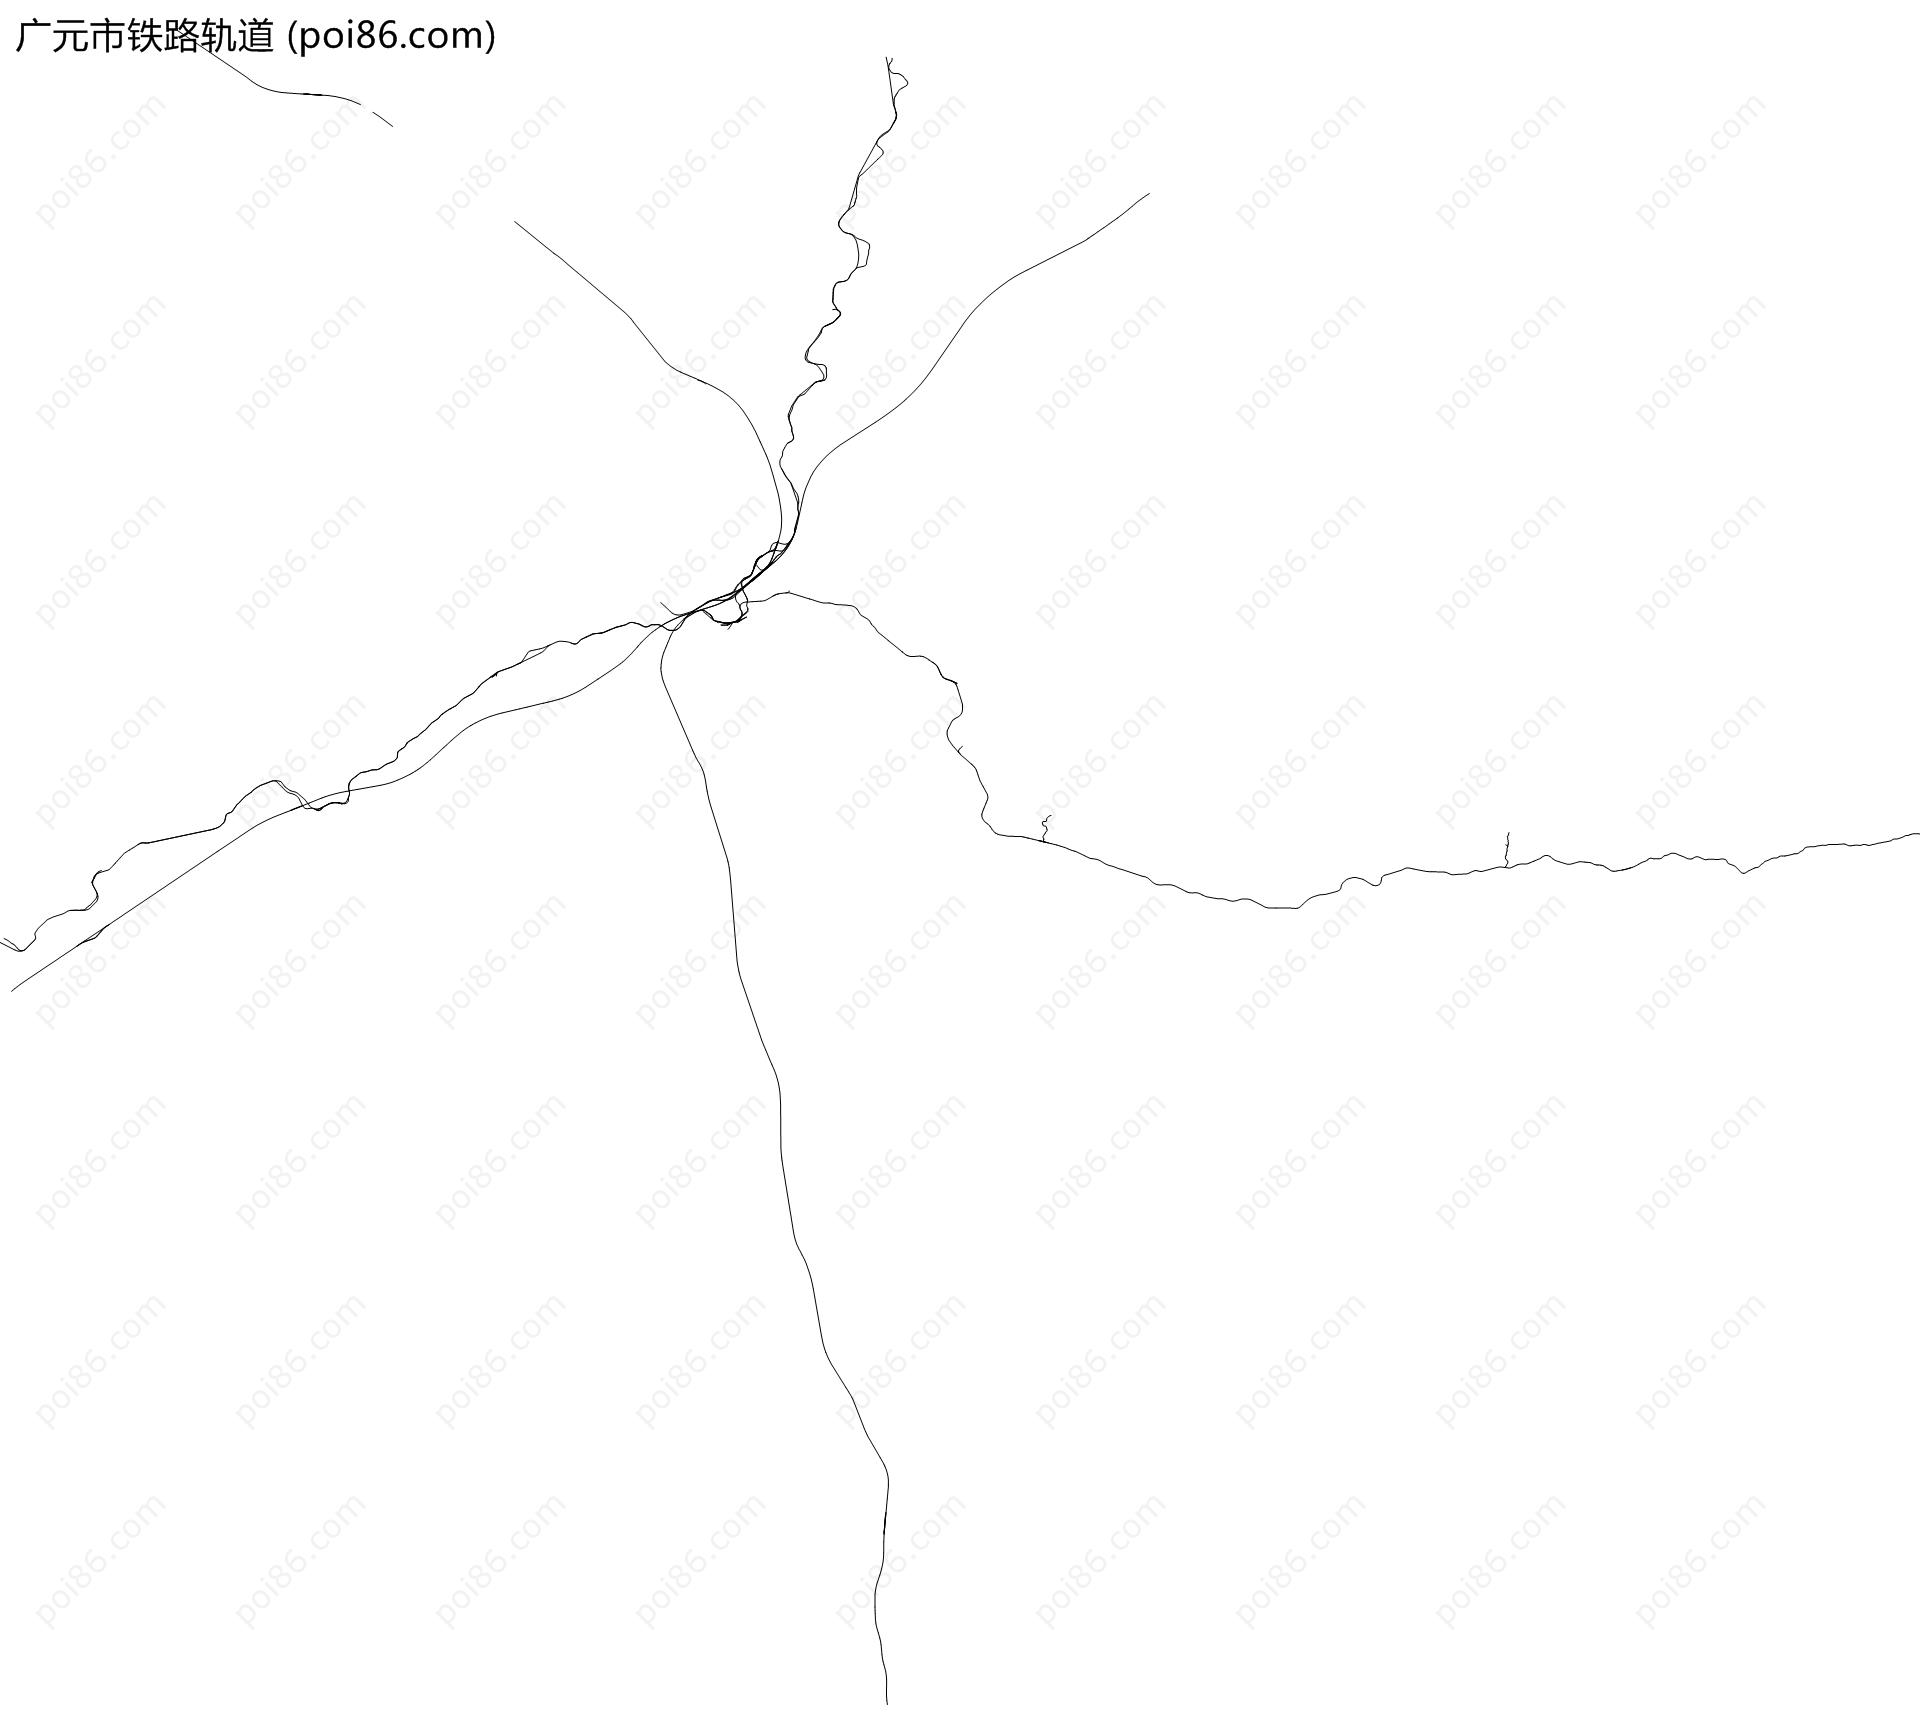 广元市铁路轨道地图